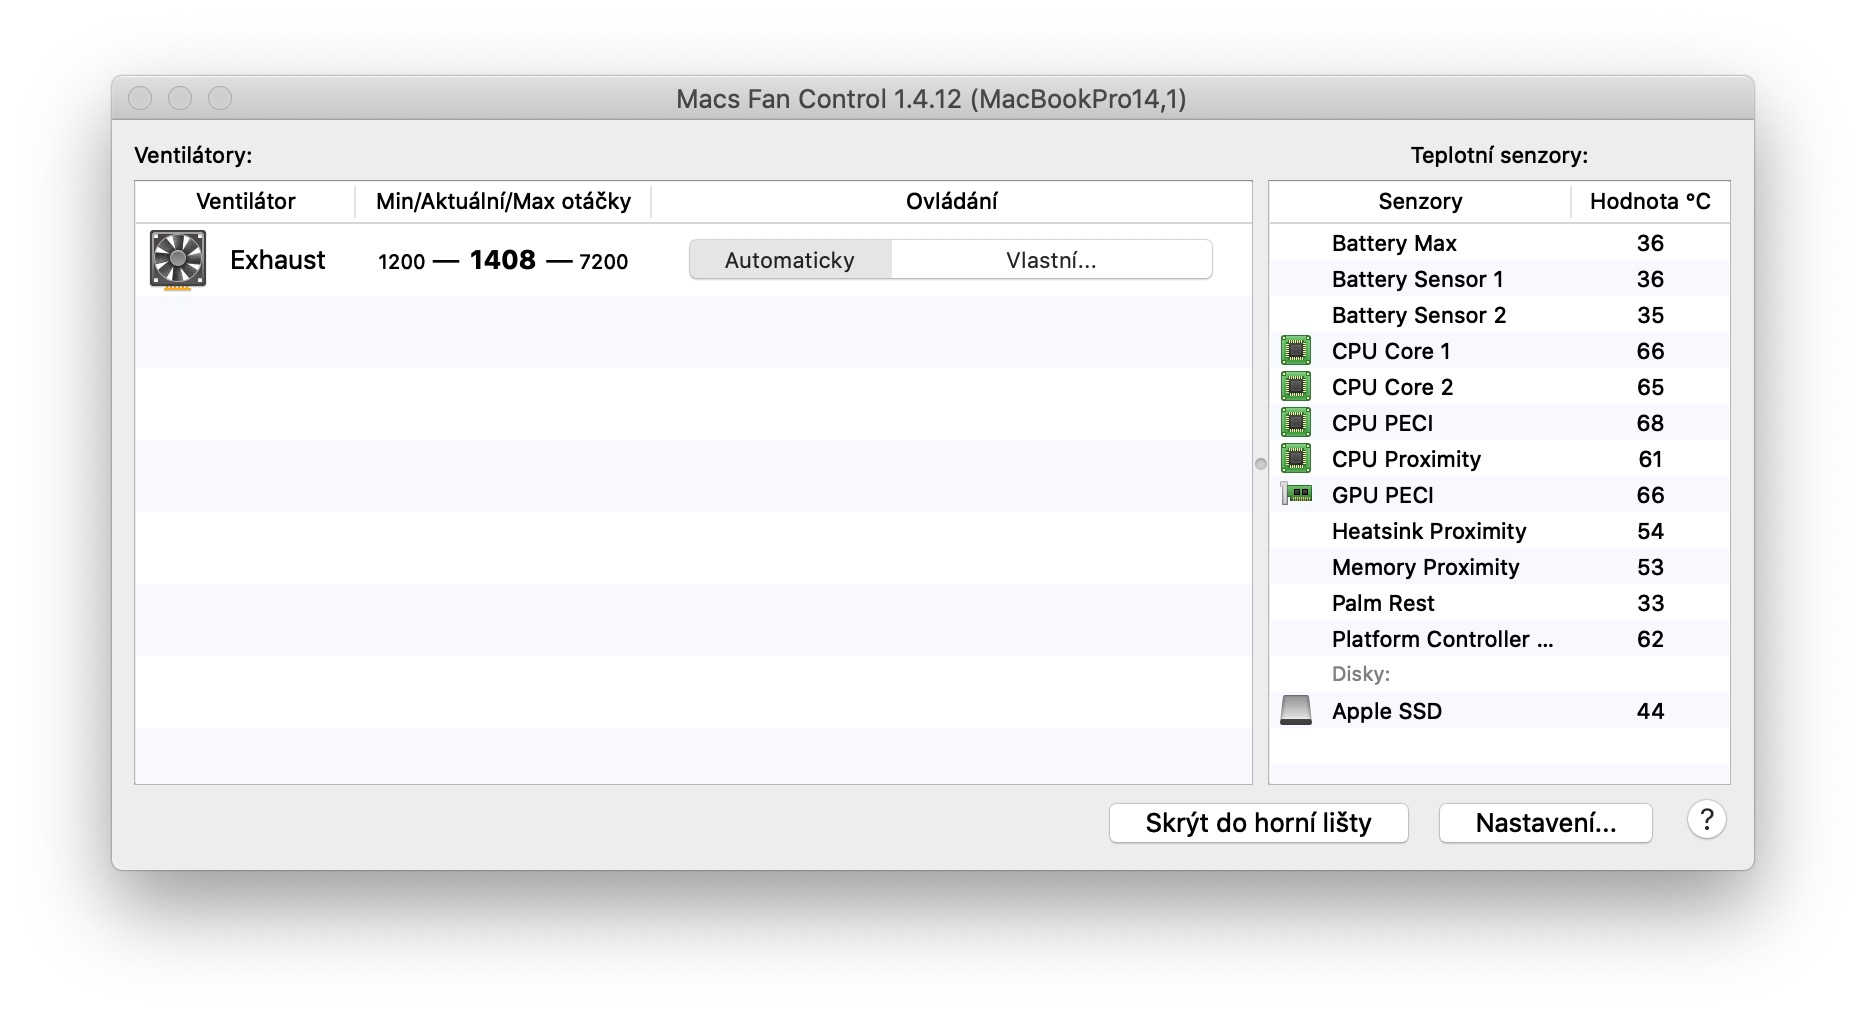 macs fan control pro license key crack